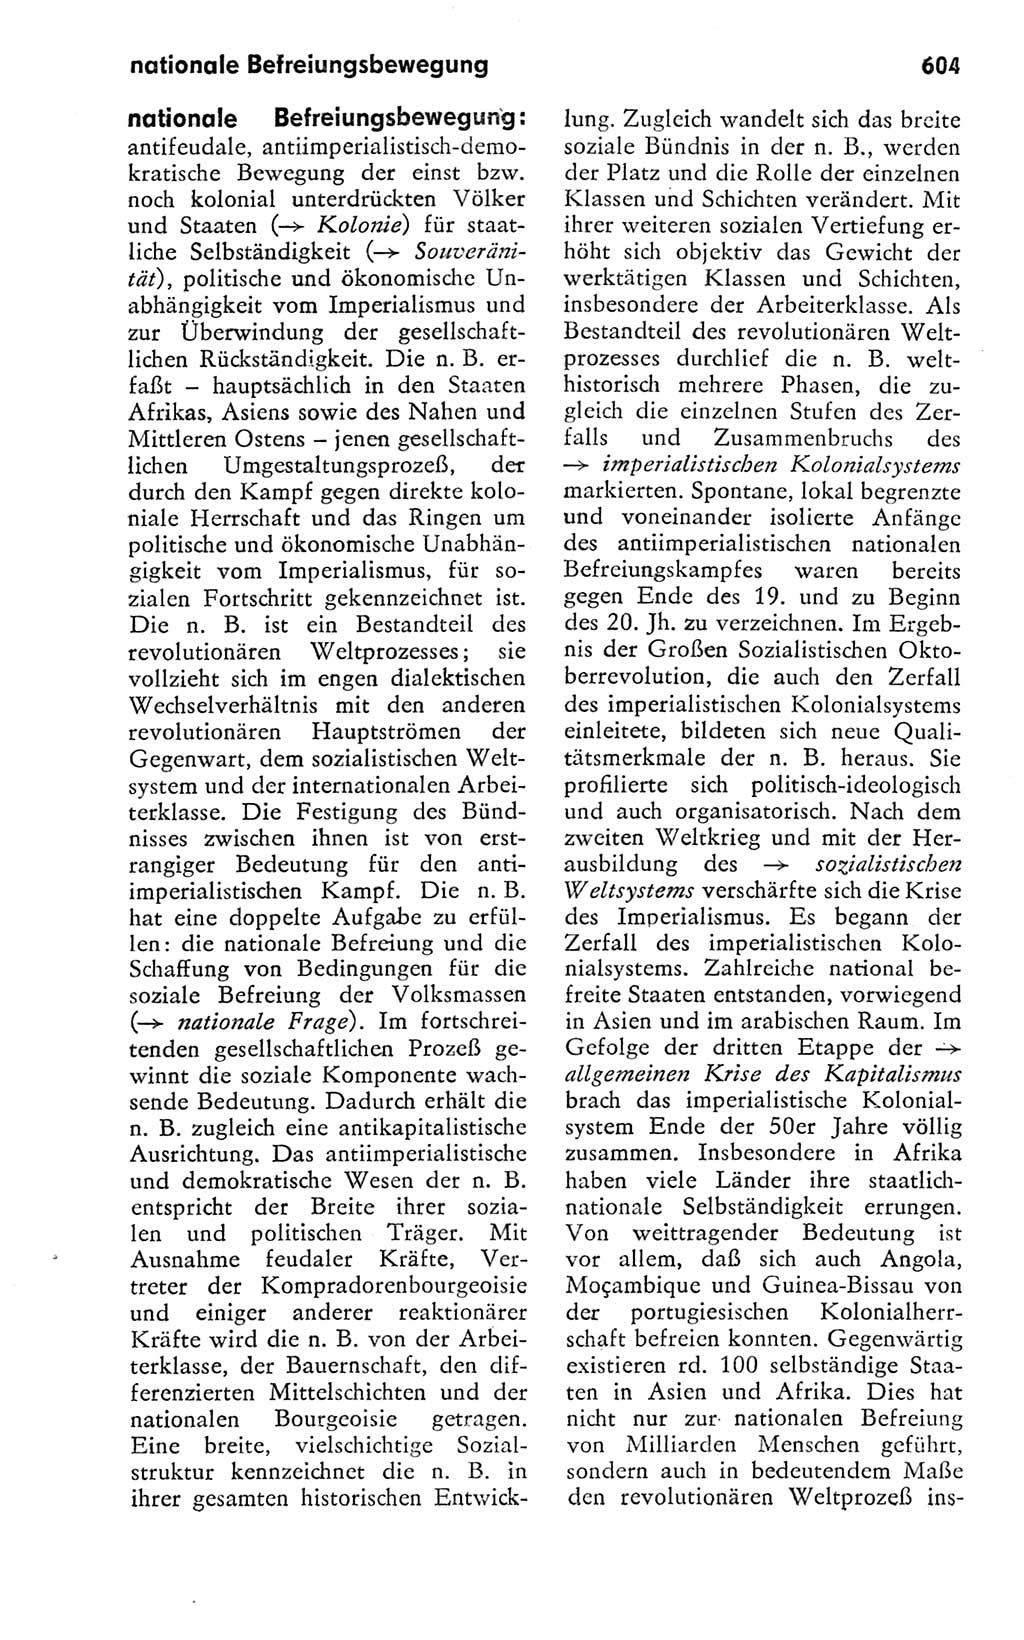 Kleines politisches Wörterbuch [Deutsche Demokratische Republik (DDR)] 1978, Seite 604 (Kl. pol. Wb. DDR 1978, S. 604)